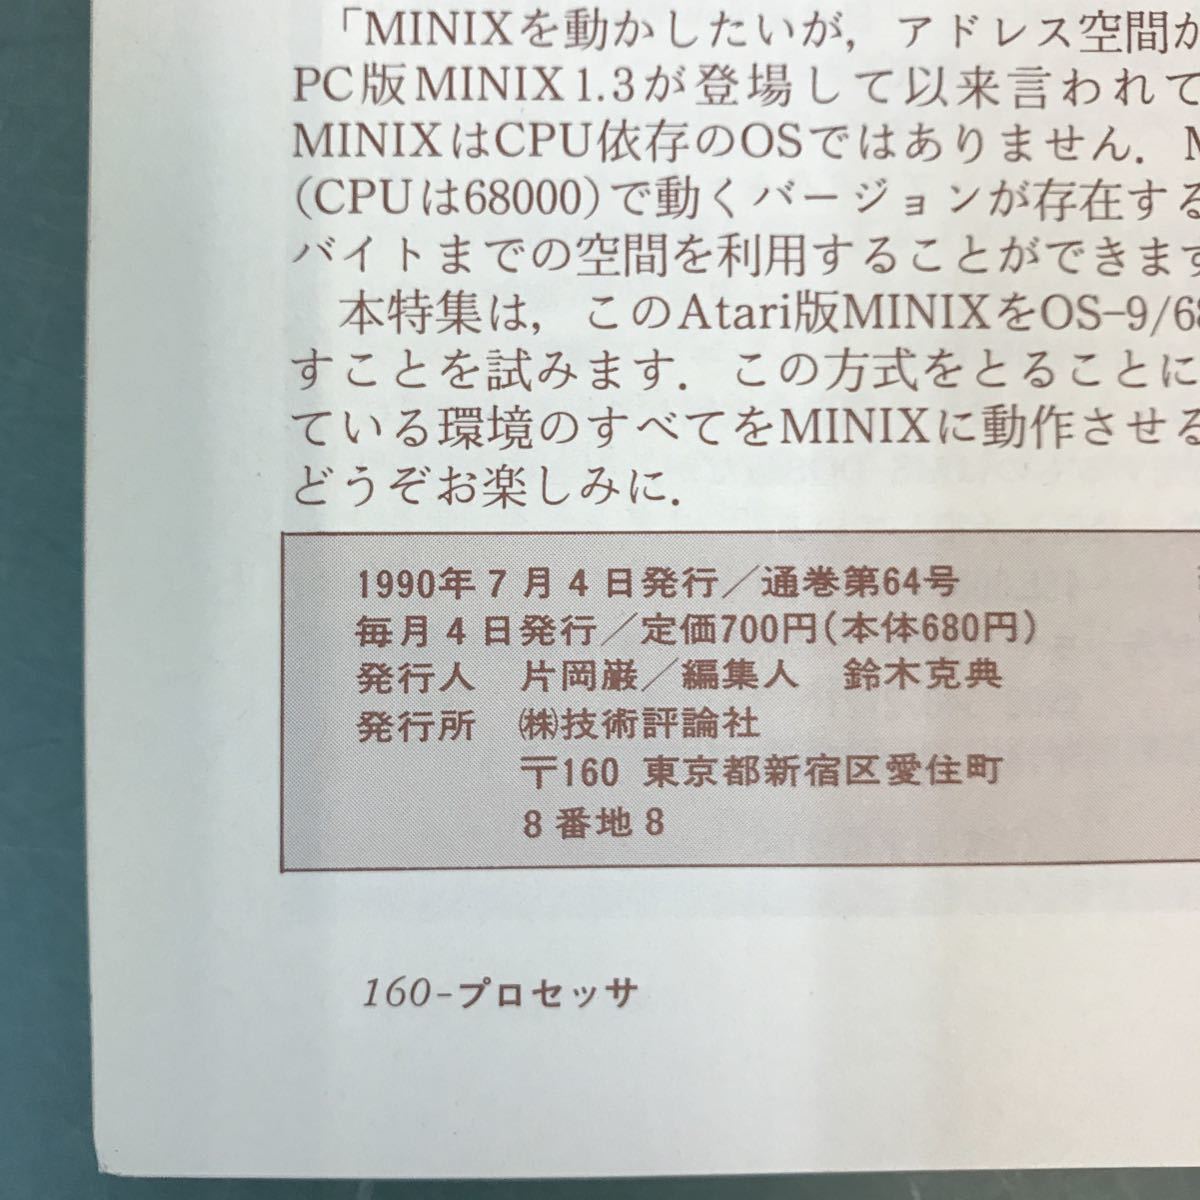 A17-056 процессор PROCESSOR 1990 год 8 месяц номер специальный выпуск /MINIX...UNIX